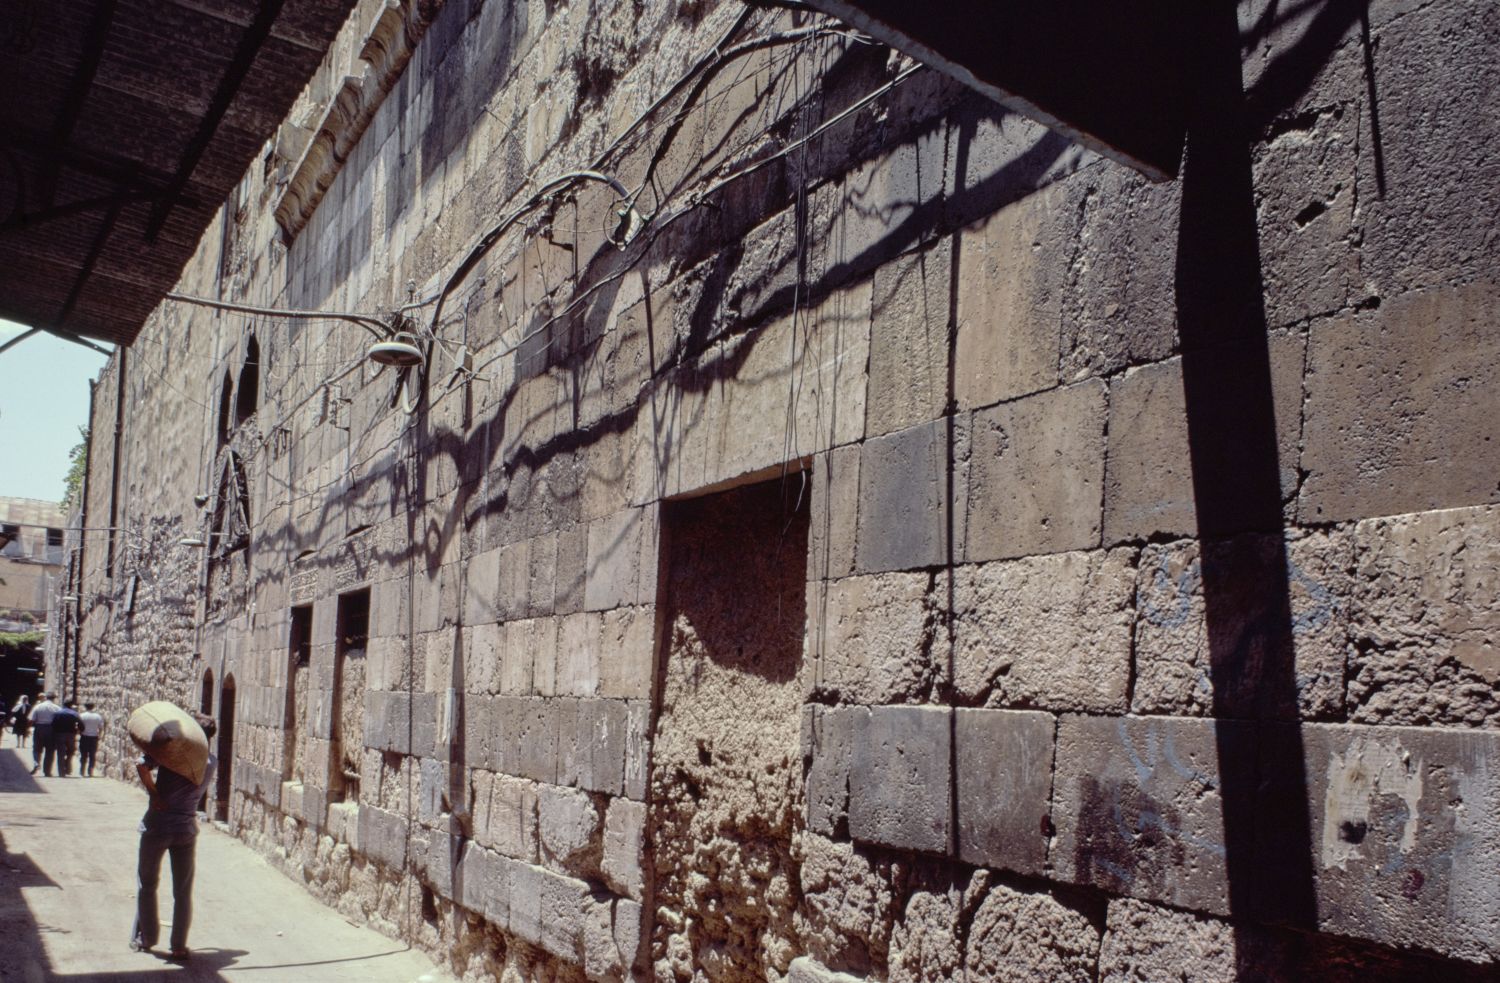 View of façade.